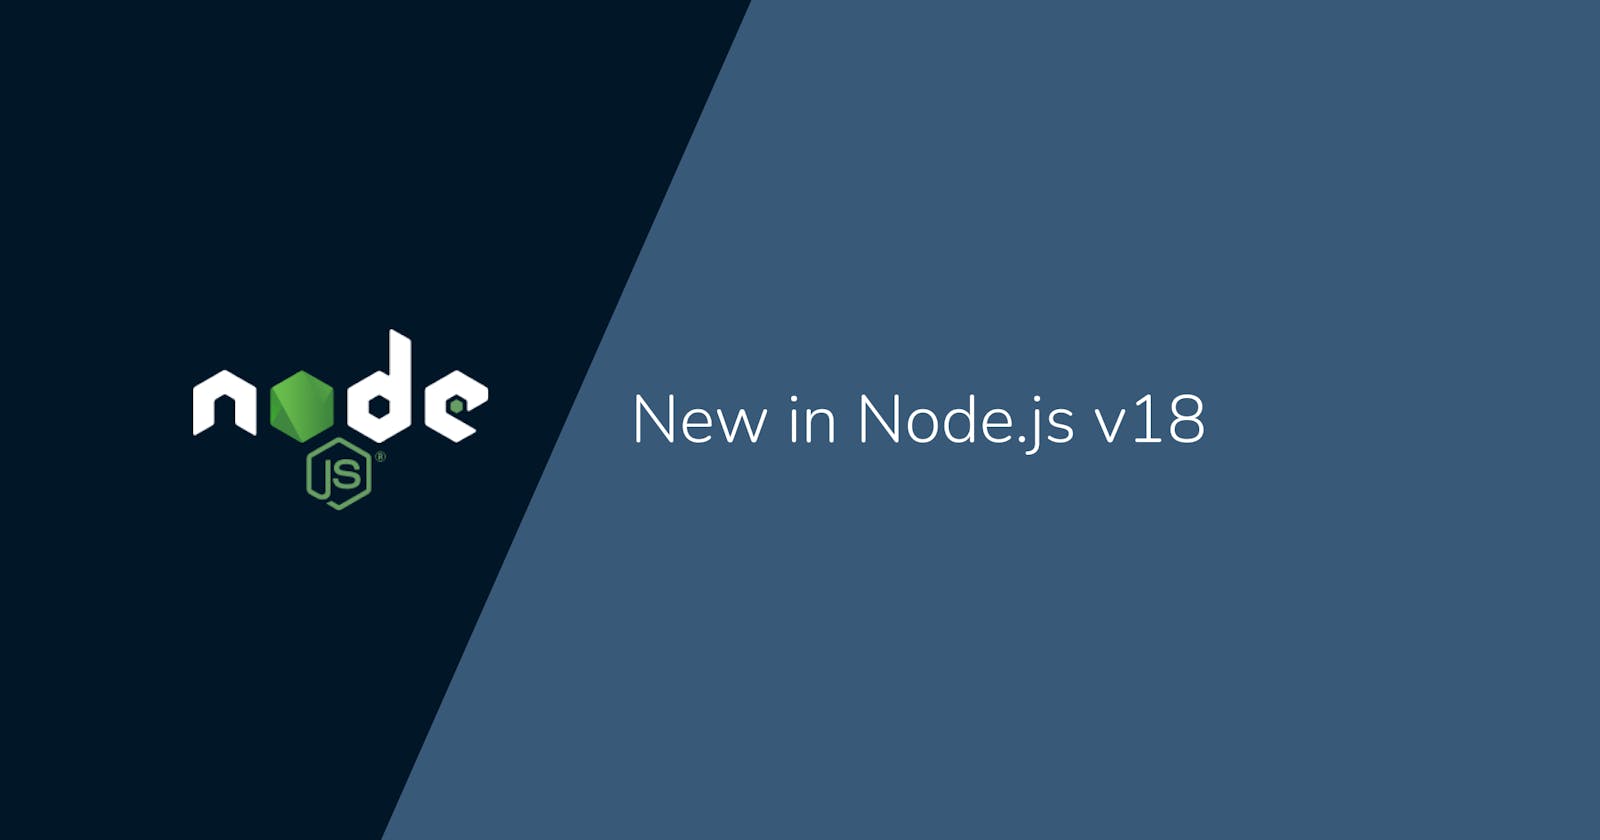 New in Node.js v18